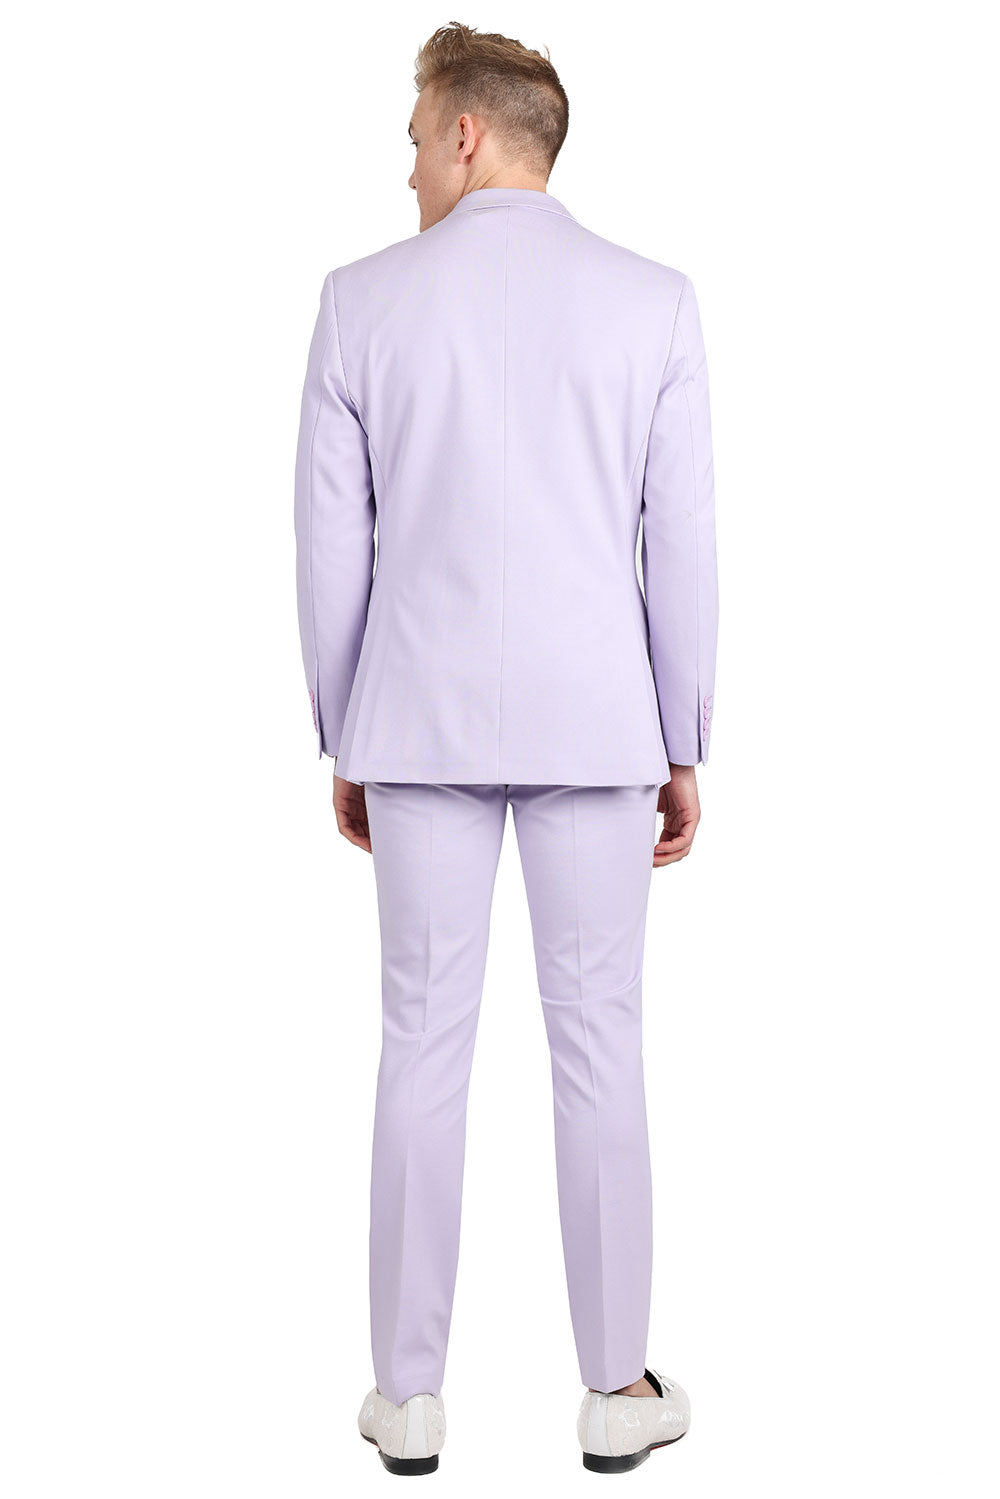 BARABAS Men's Brushed Cotton Notched Lapel Matt Suit 3SU02 Lavender